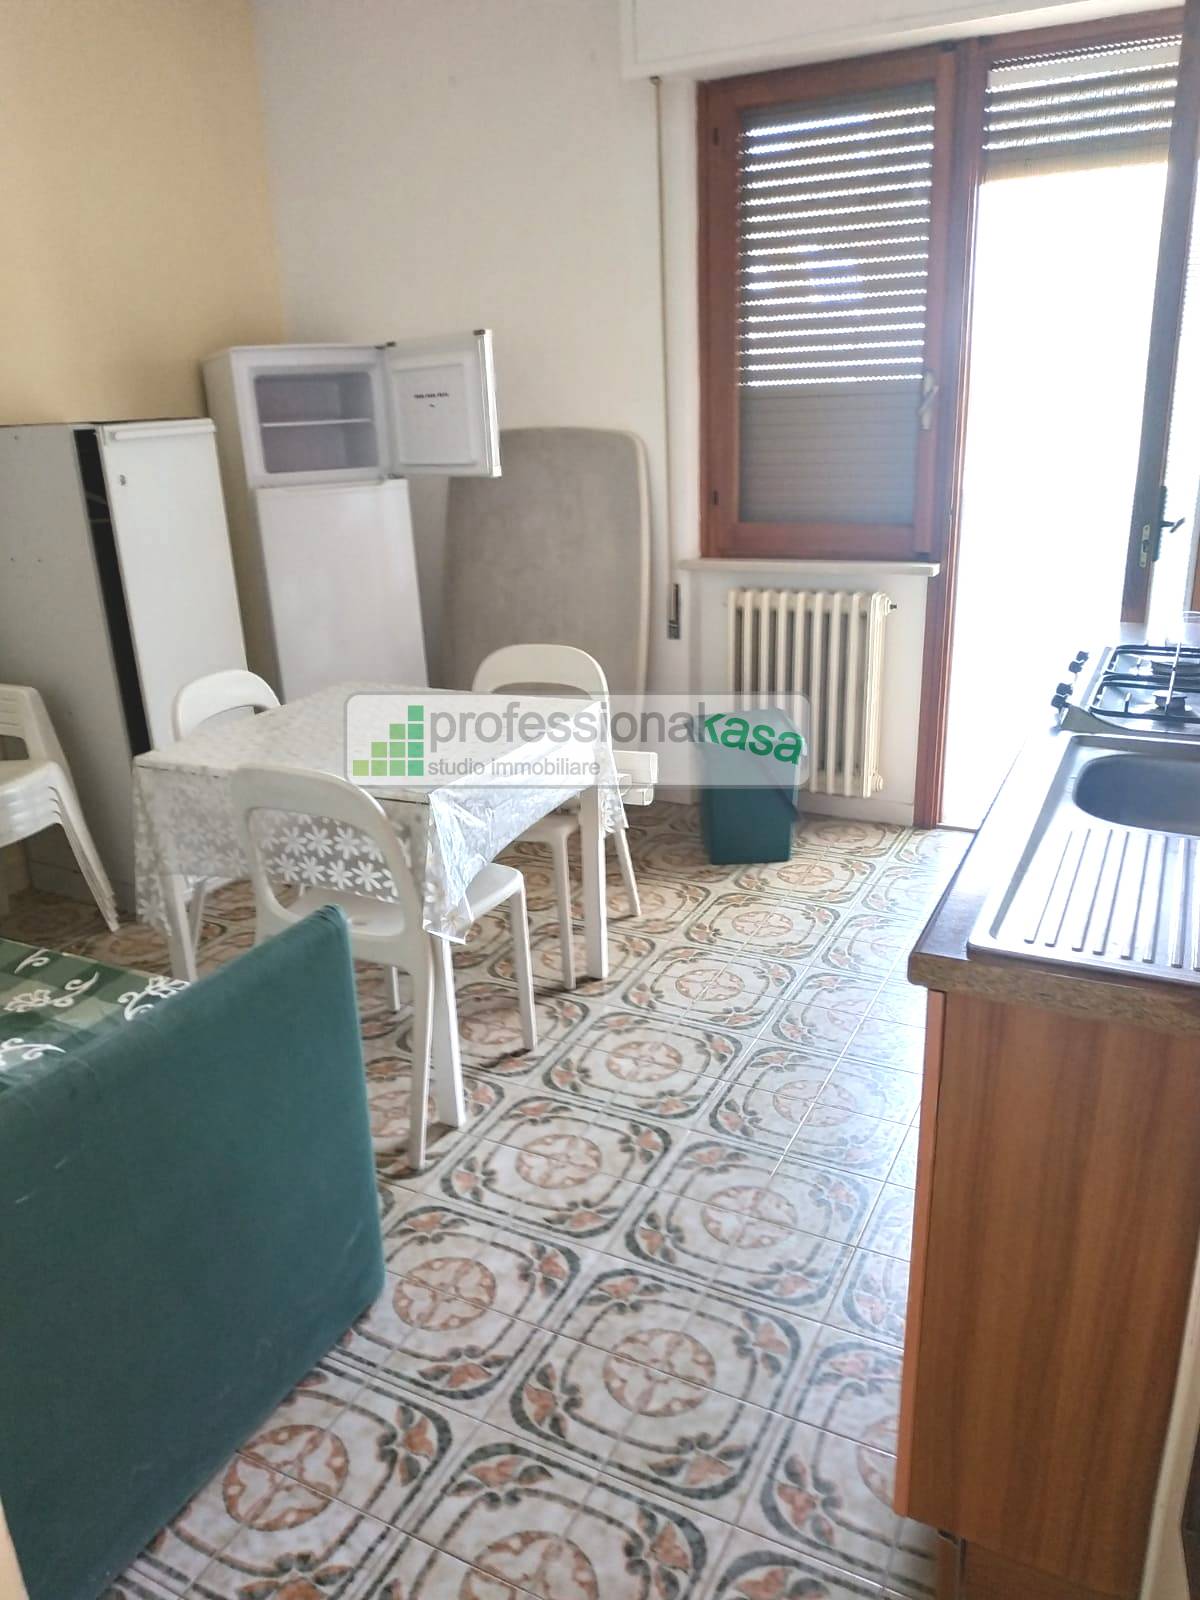 Appartamento in vendita a Vasto, 4 locali, zona Località: 3VastoMarina, prezzo € 160.000 | PortaleAgenzieImmobiliari.it